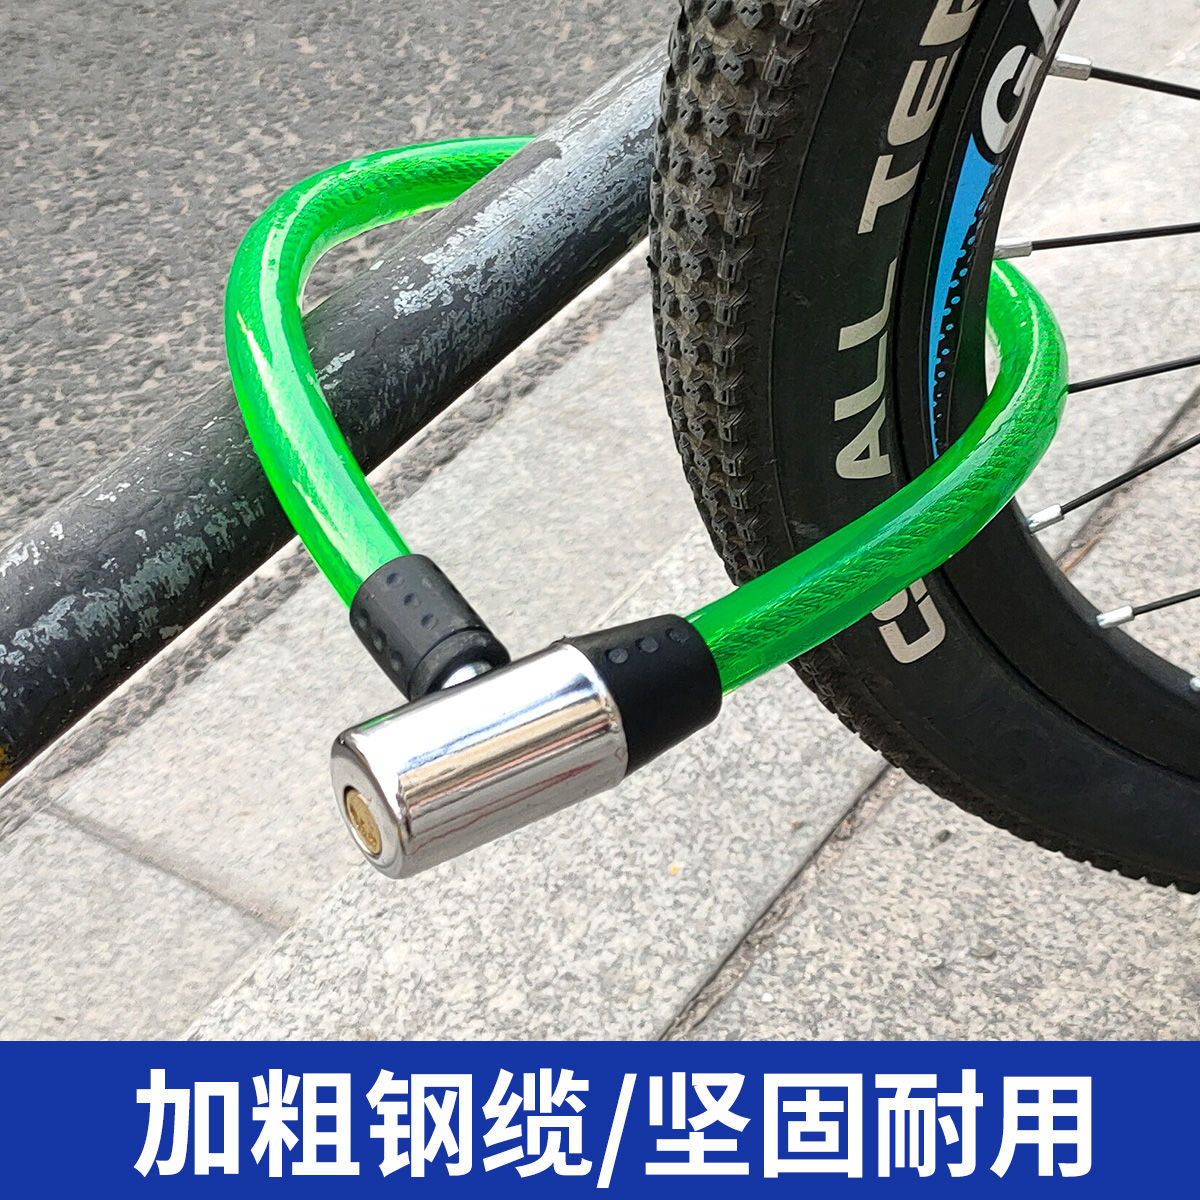 自行车钢丝锁环型锁钢缆锁软锁防盗锁门锁电动车链条锁电瓶锁老款